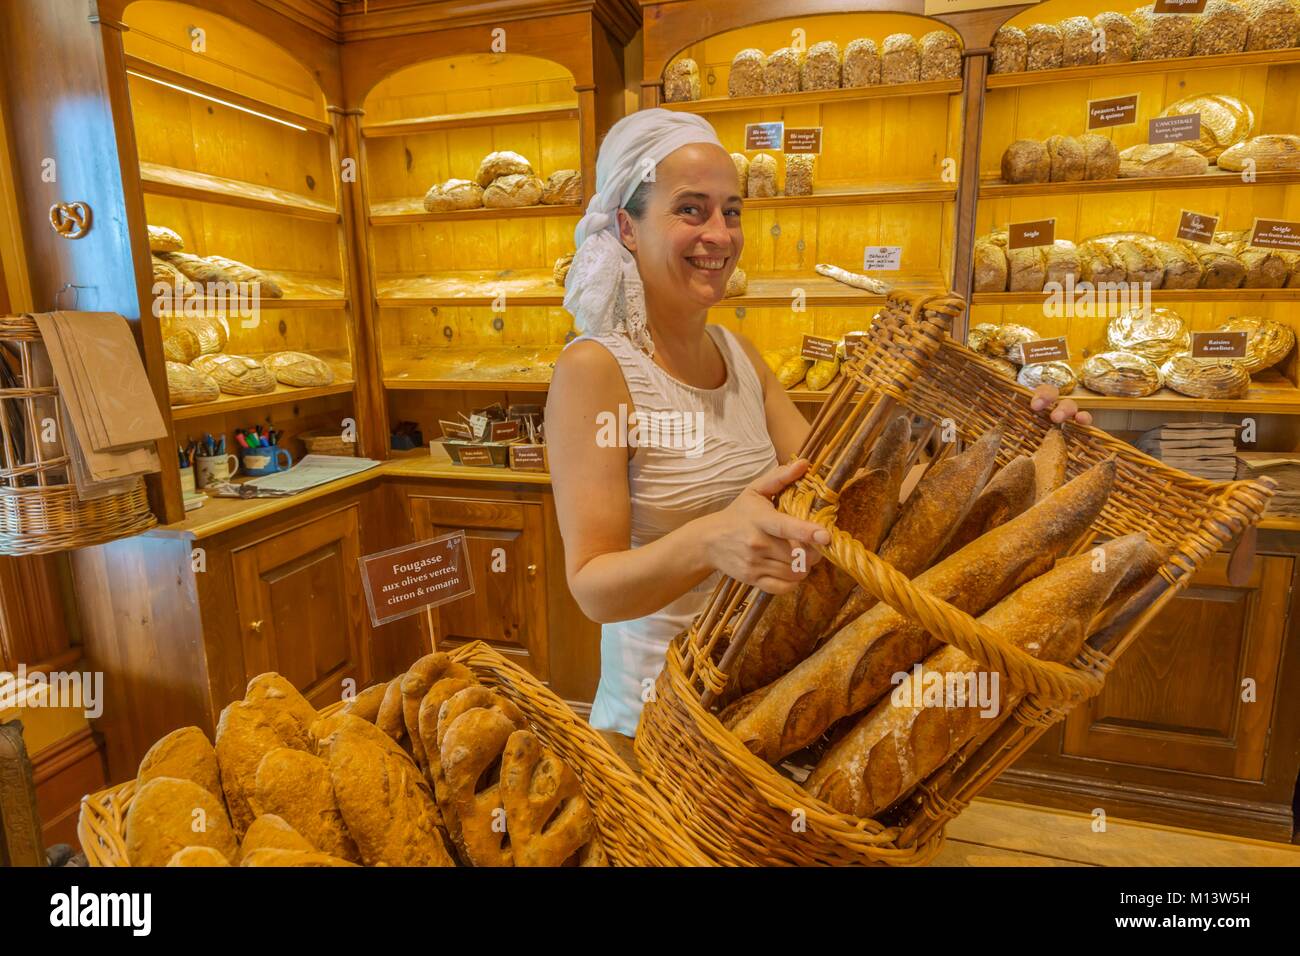 Canadá, provincia de Quebec, Bas-Saint-Laurent, Kamouraska Niemand, Panadería, uno de los panaderos Foto de stock